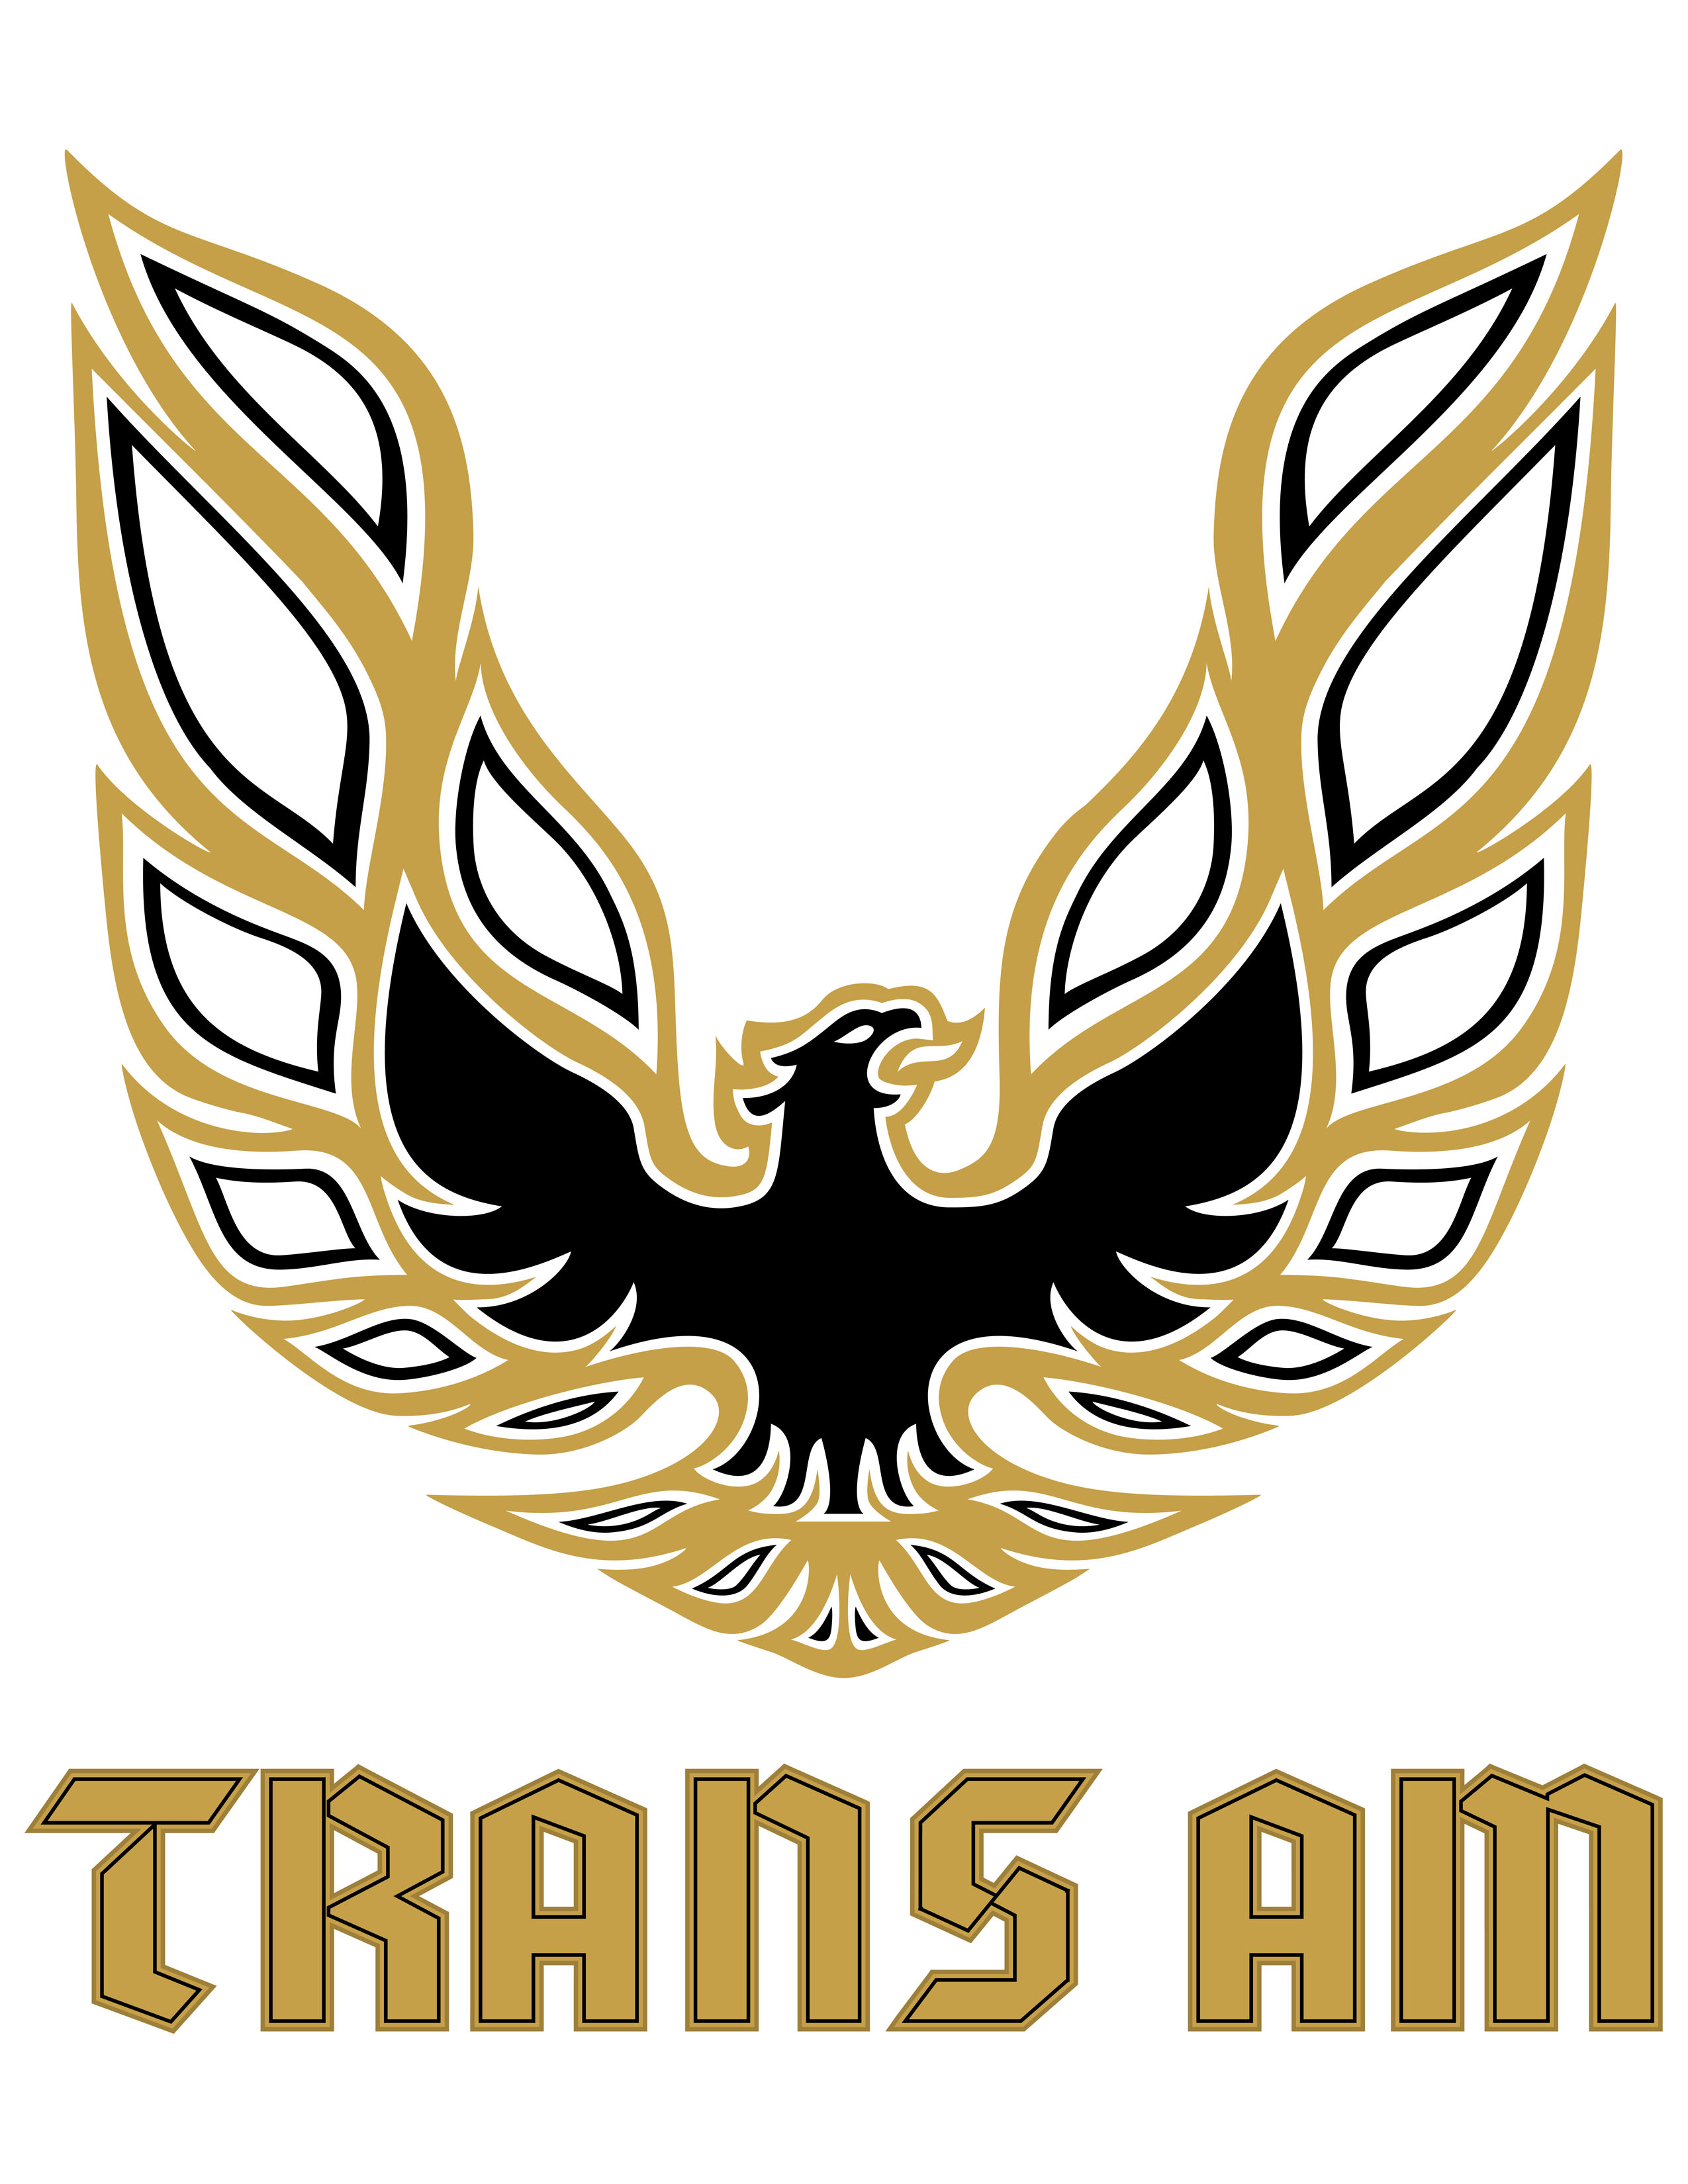 Cargo Trans Logo photo - 1